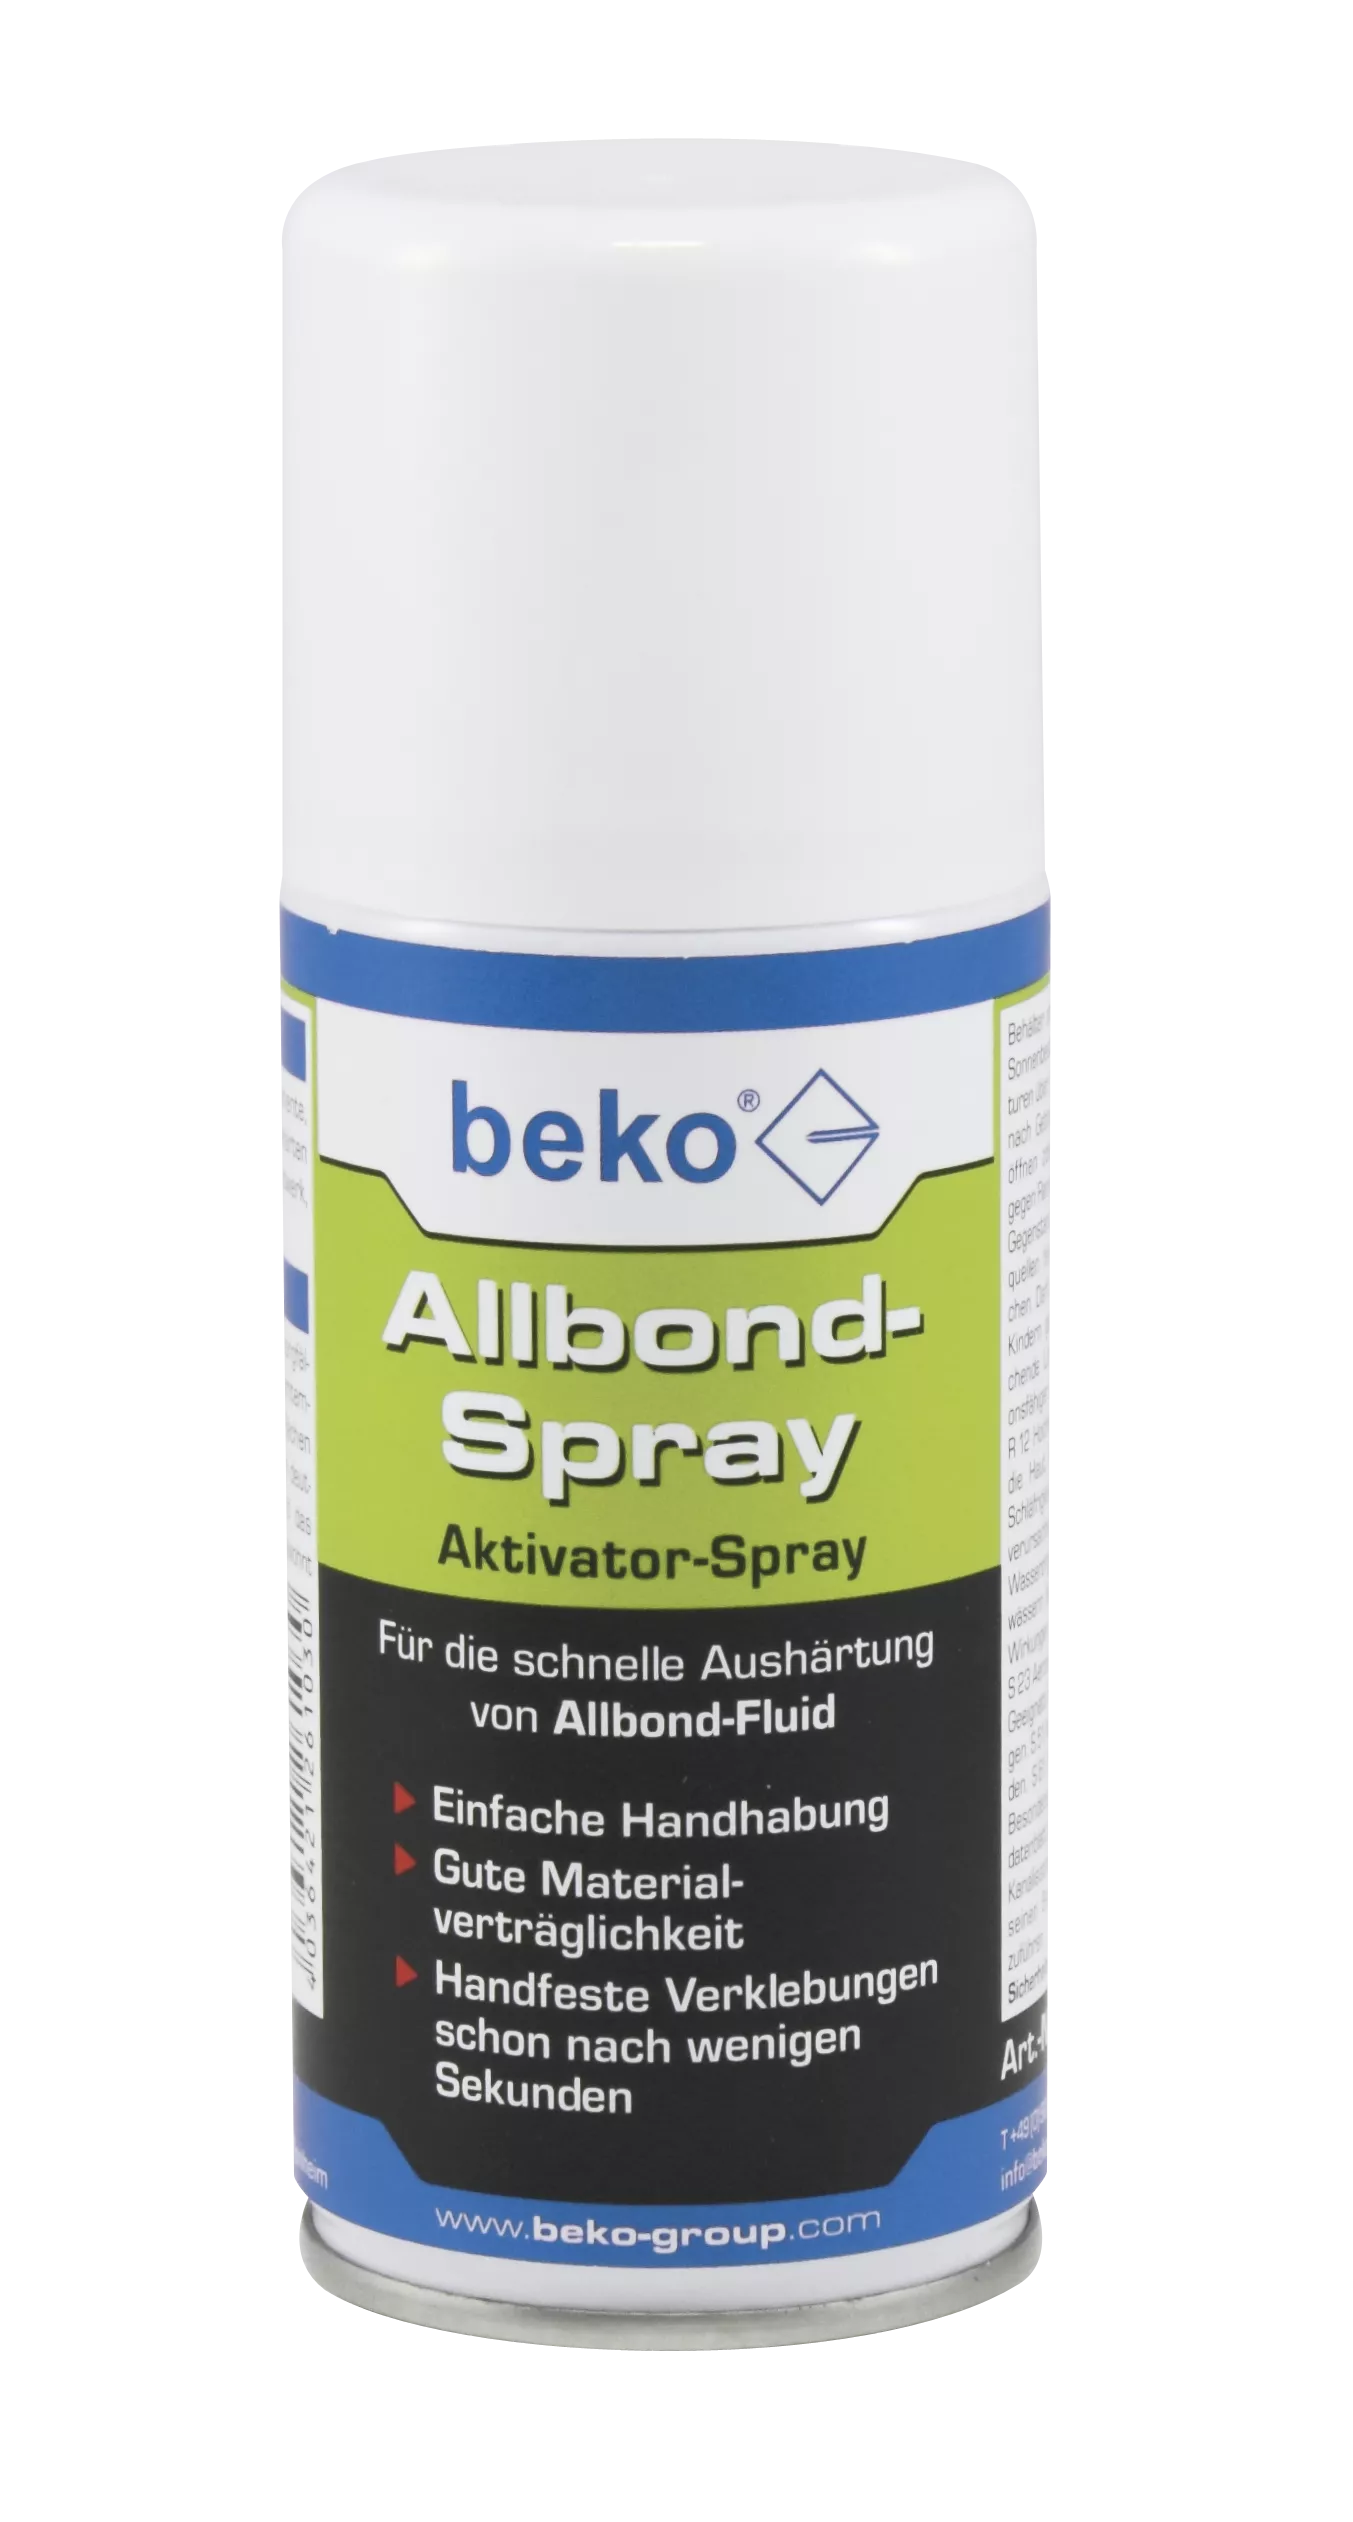 beko Allbond-Spray Aktivator-Spray 150 ml